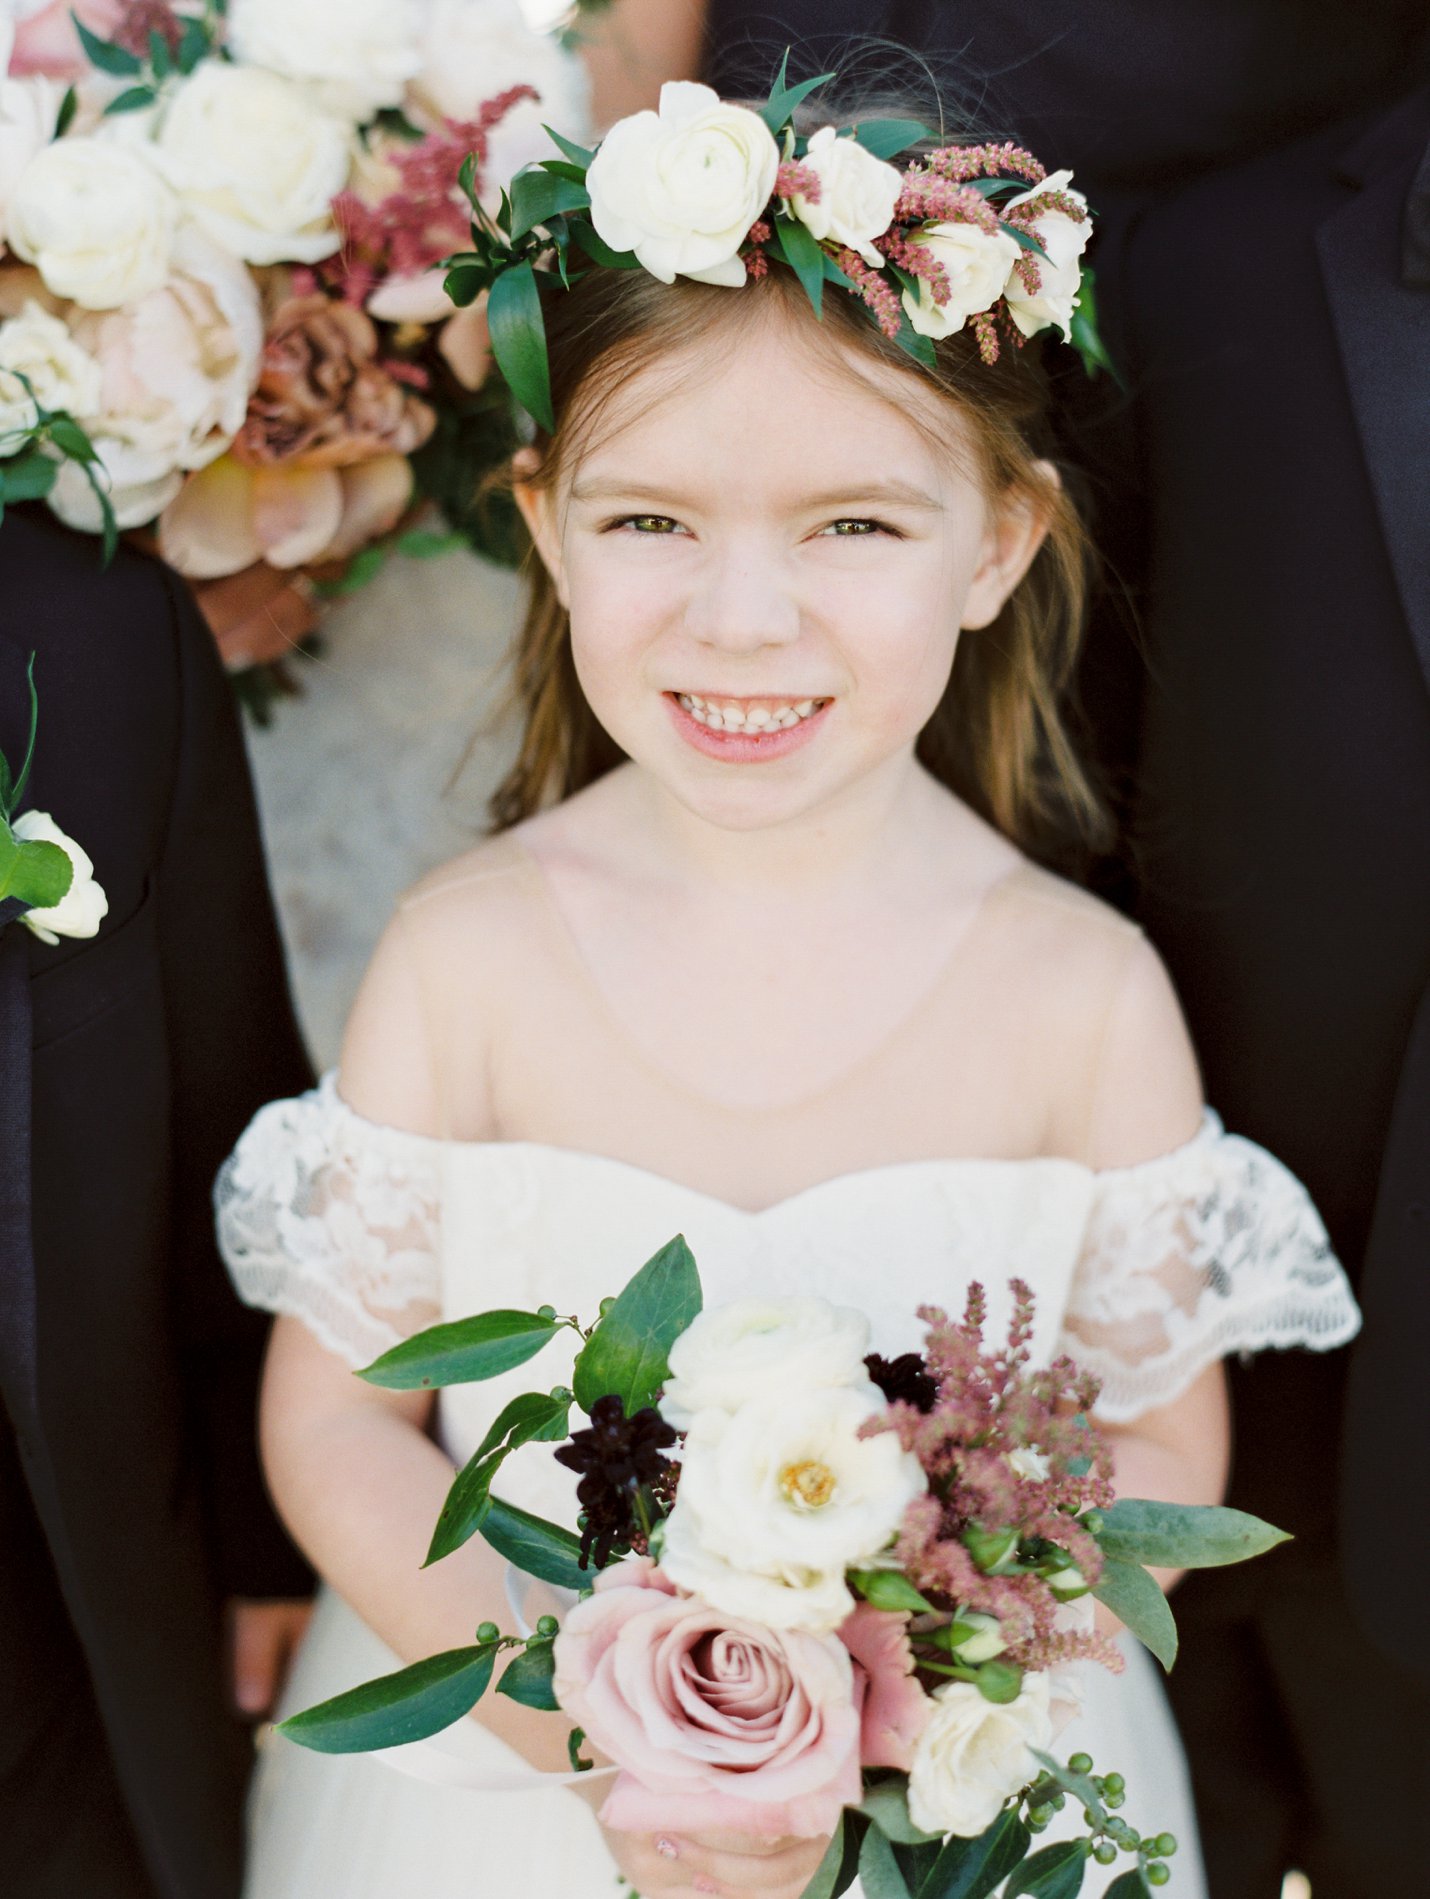 Omni Montelucia wedding - Scottsdale Wedding Photographer - Rachel Solomon Photography